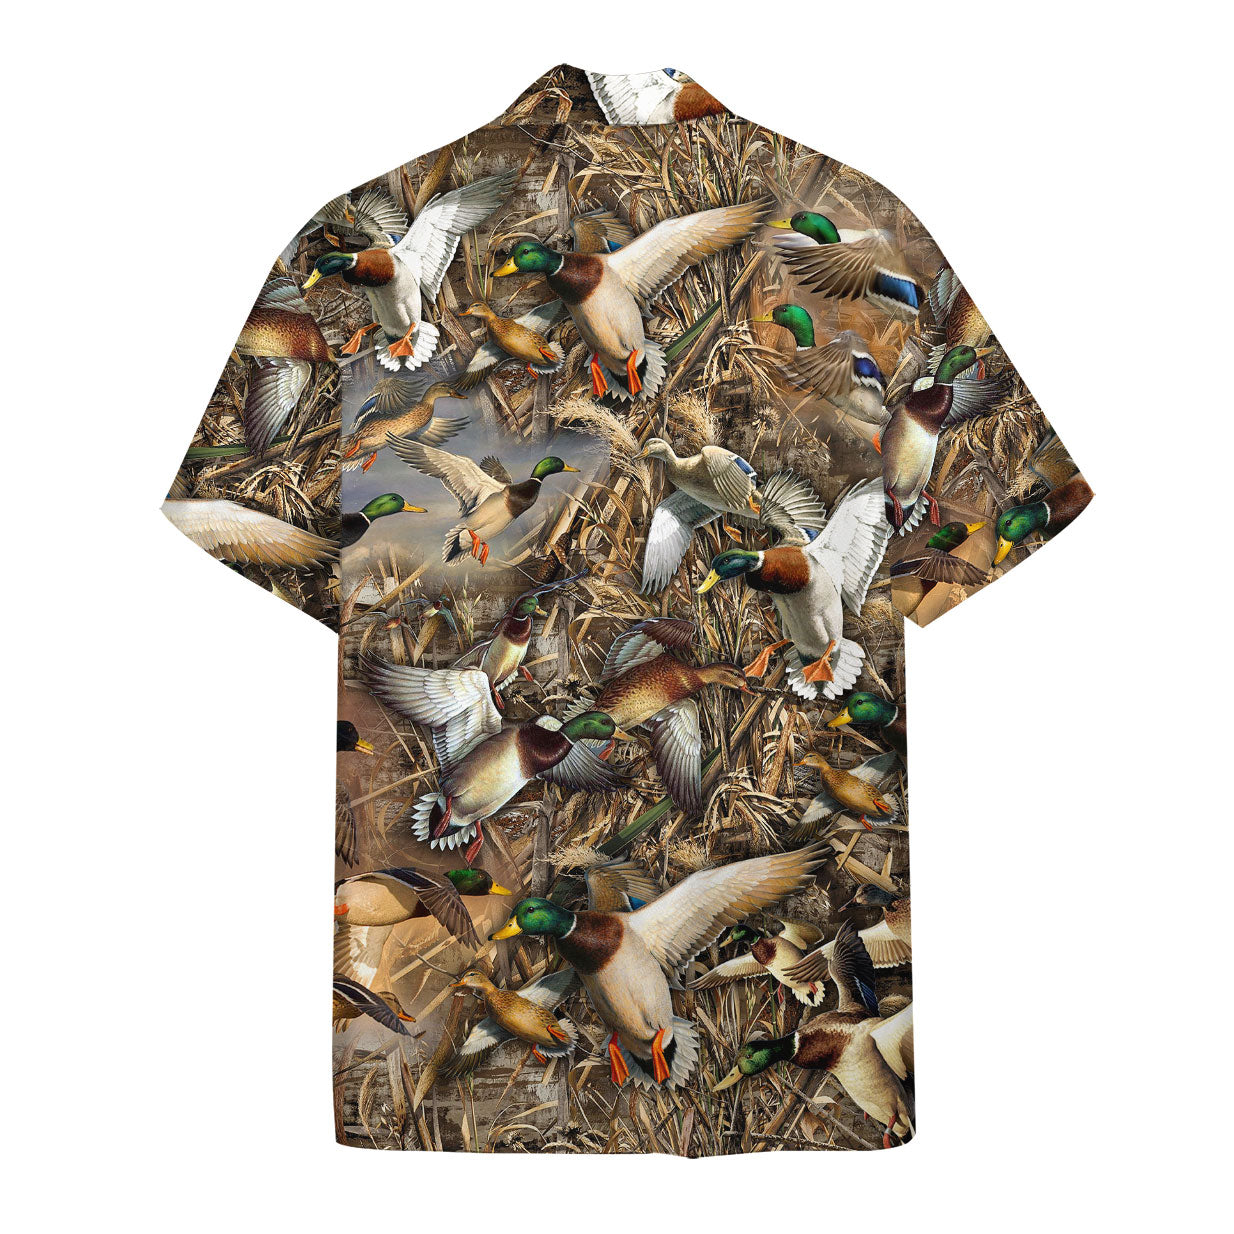 Duck hunting hawaii shirt